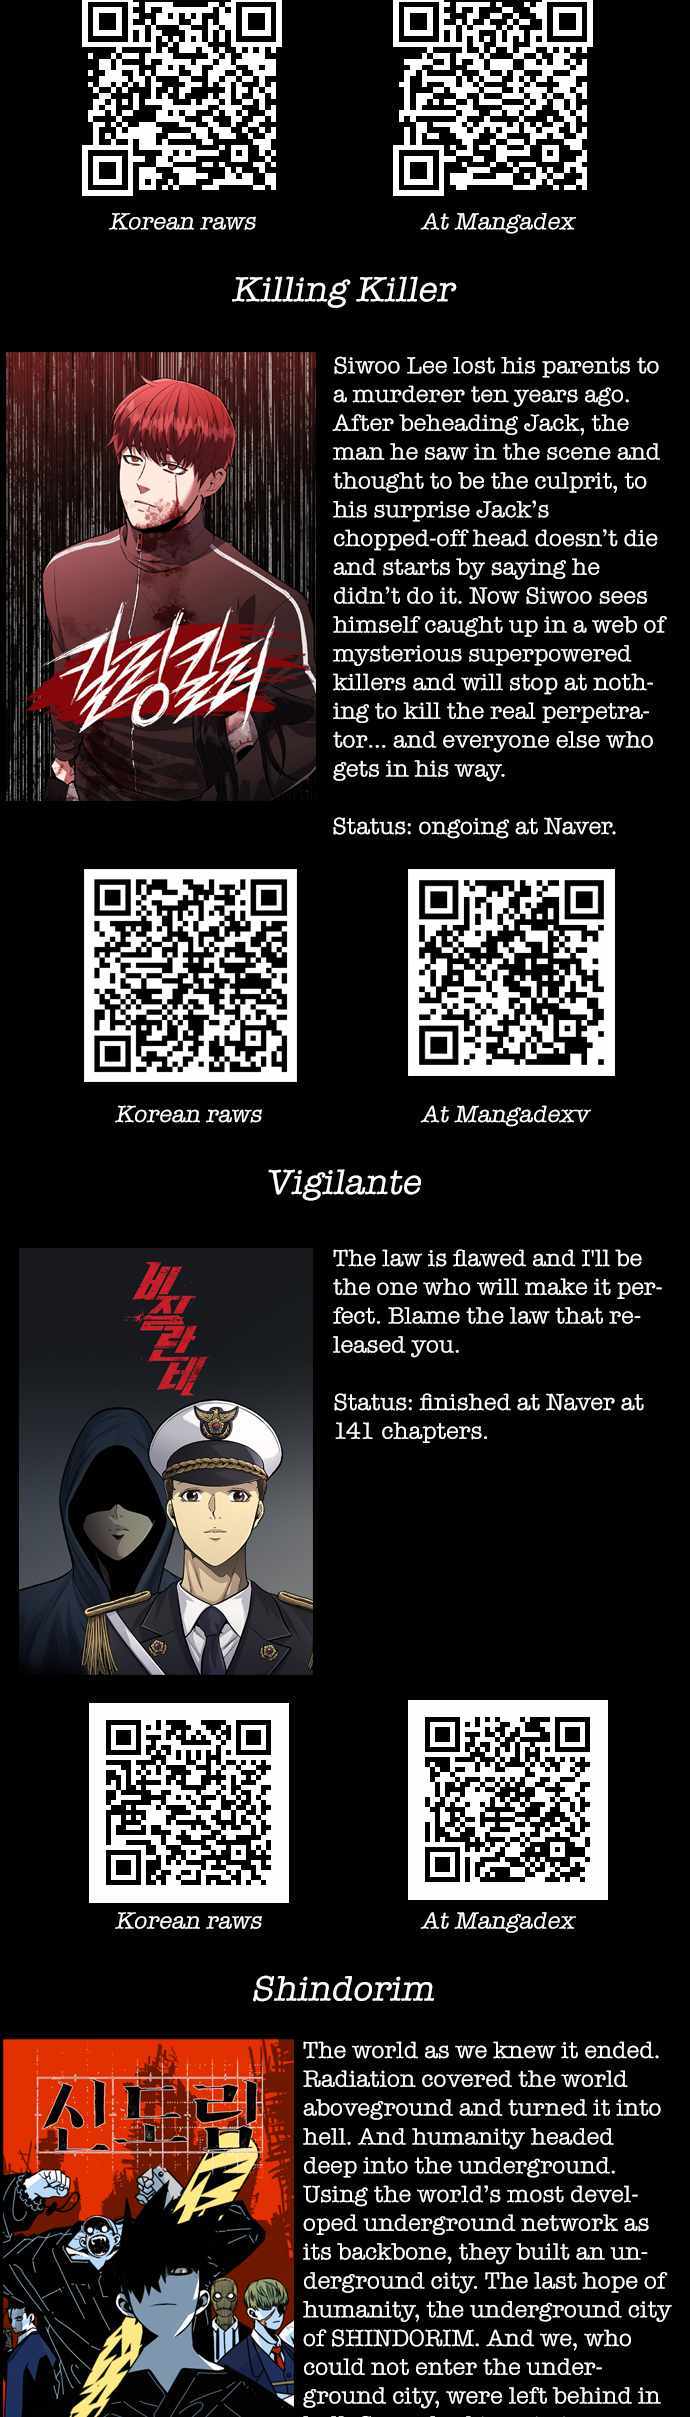 Justice (Vigilante) - 92 page 32-1849ed9c